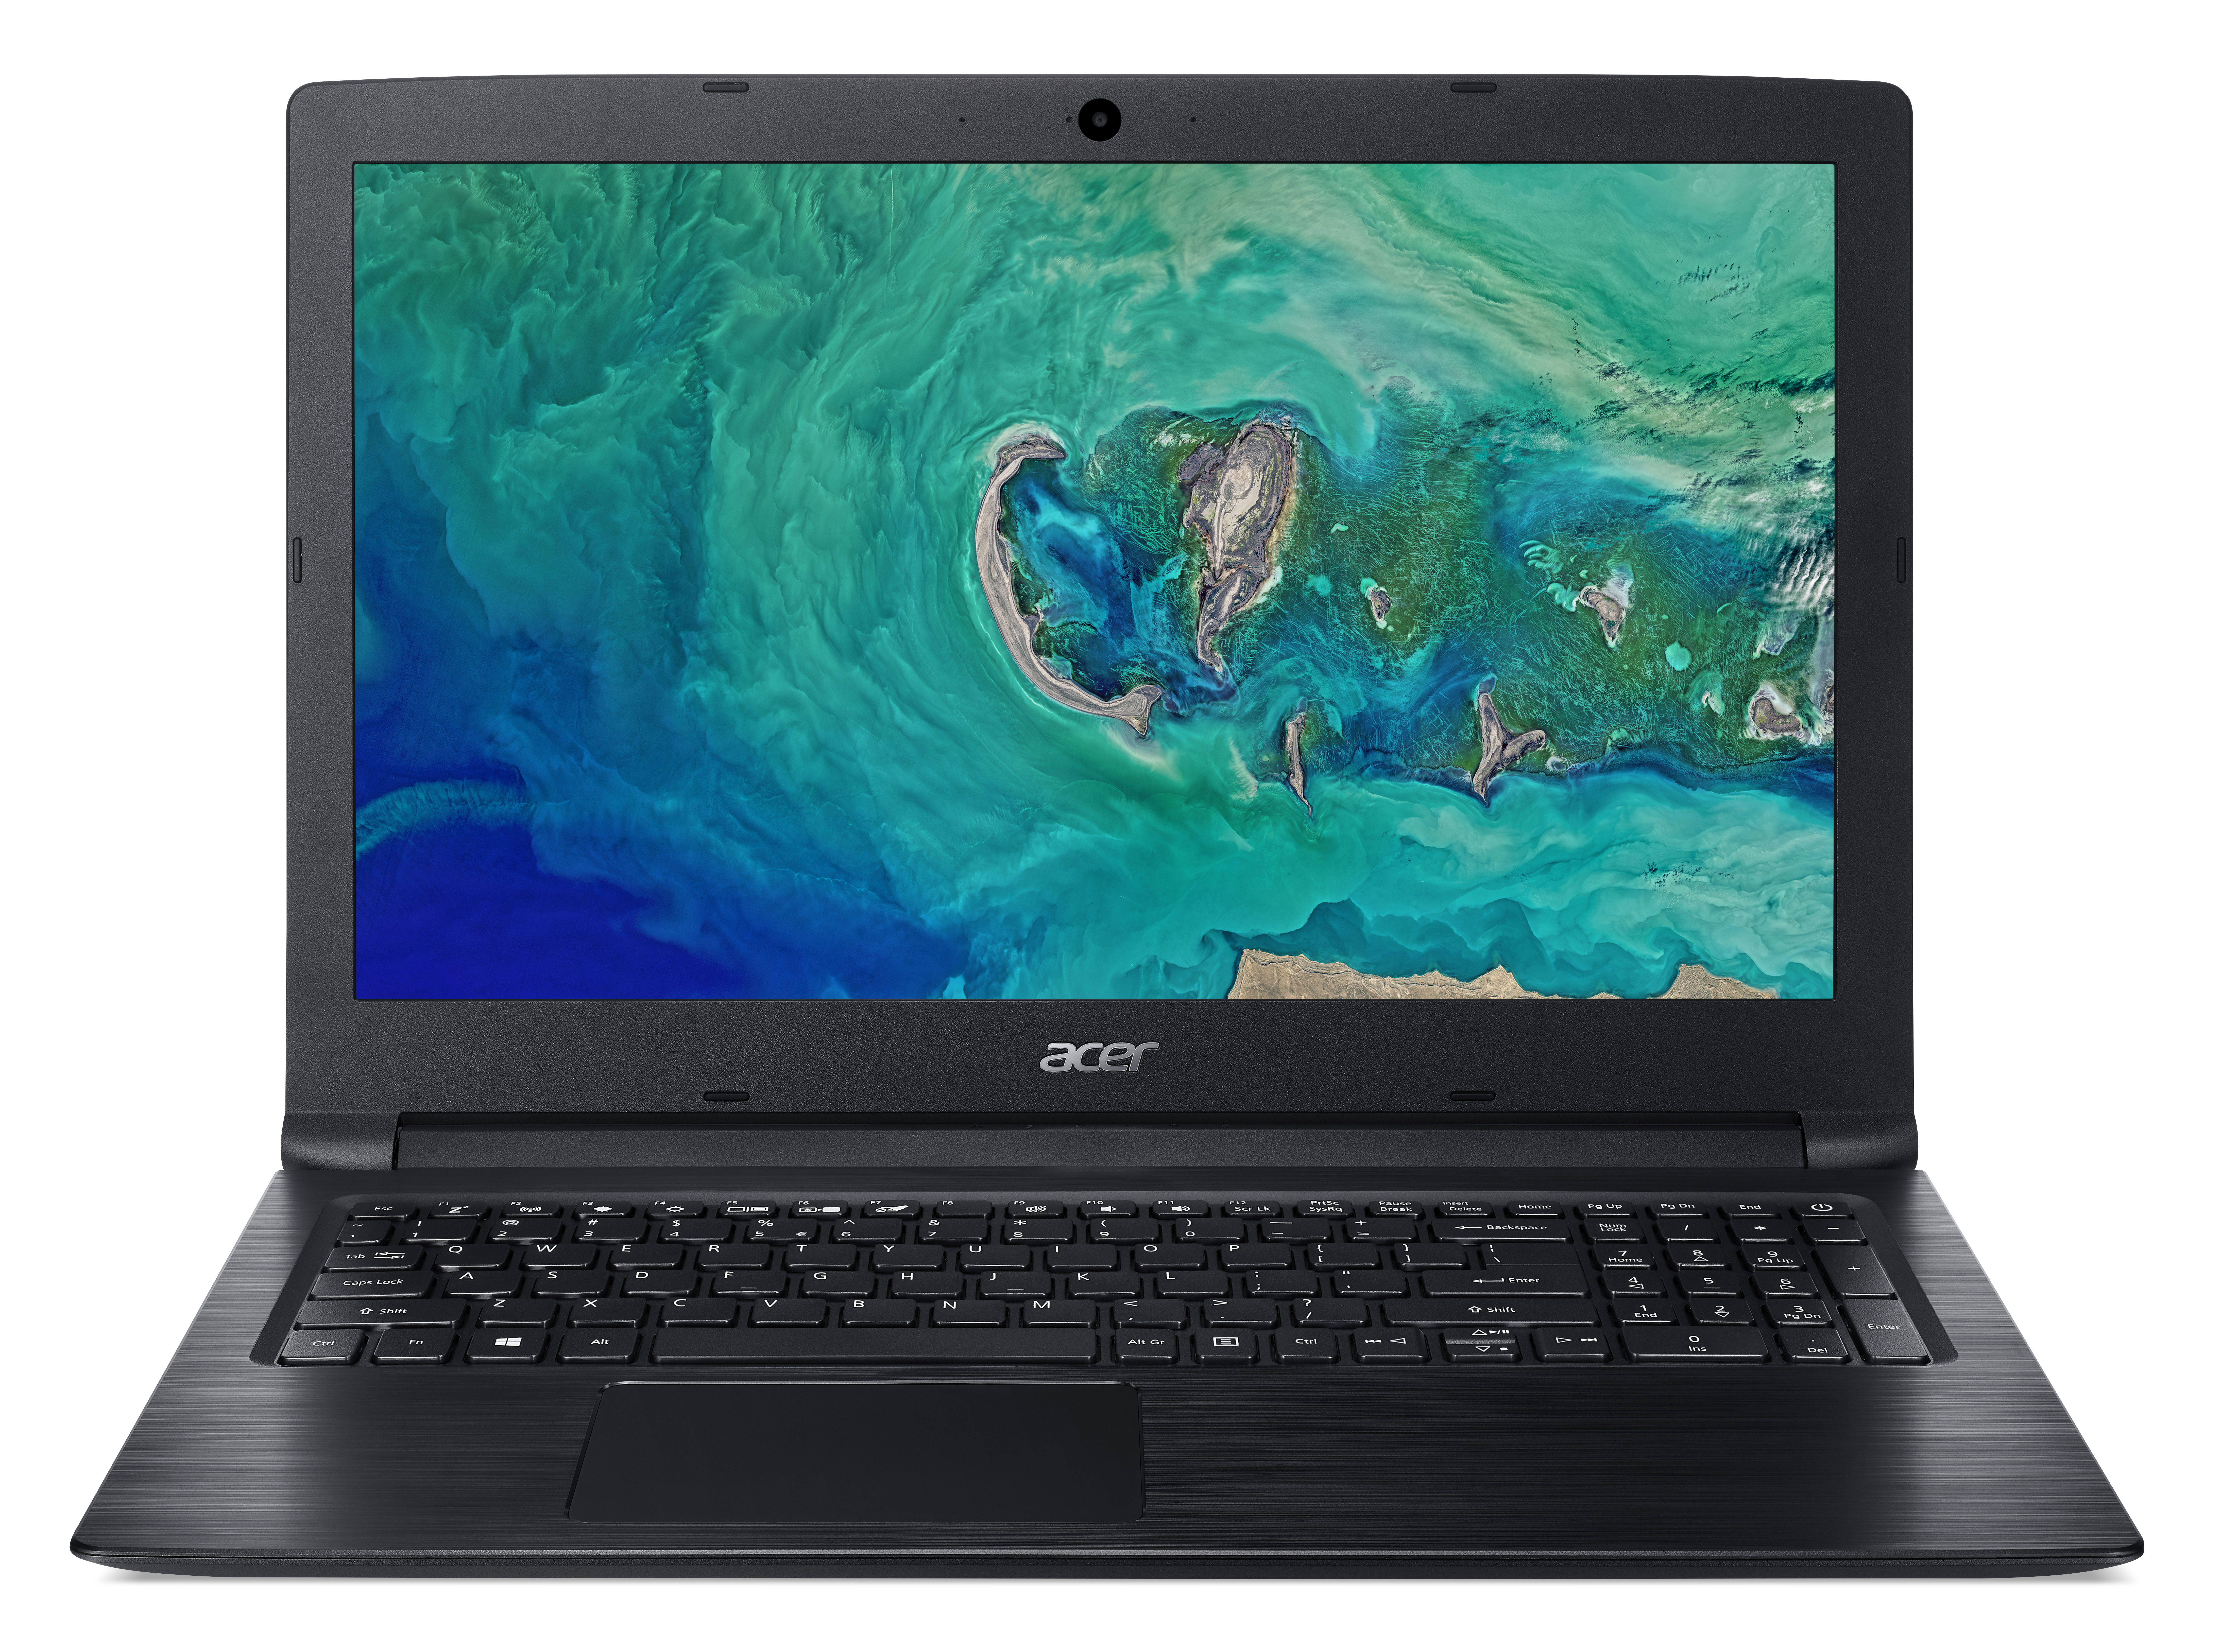 Laptop Acer A315-33-P653 Pentium N3710 4Gb 500Gb 15.6" Win 10 